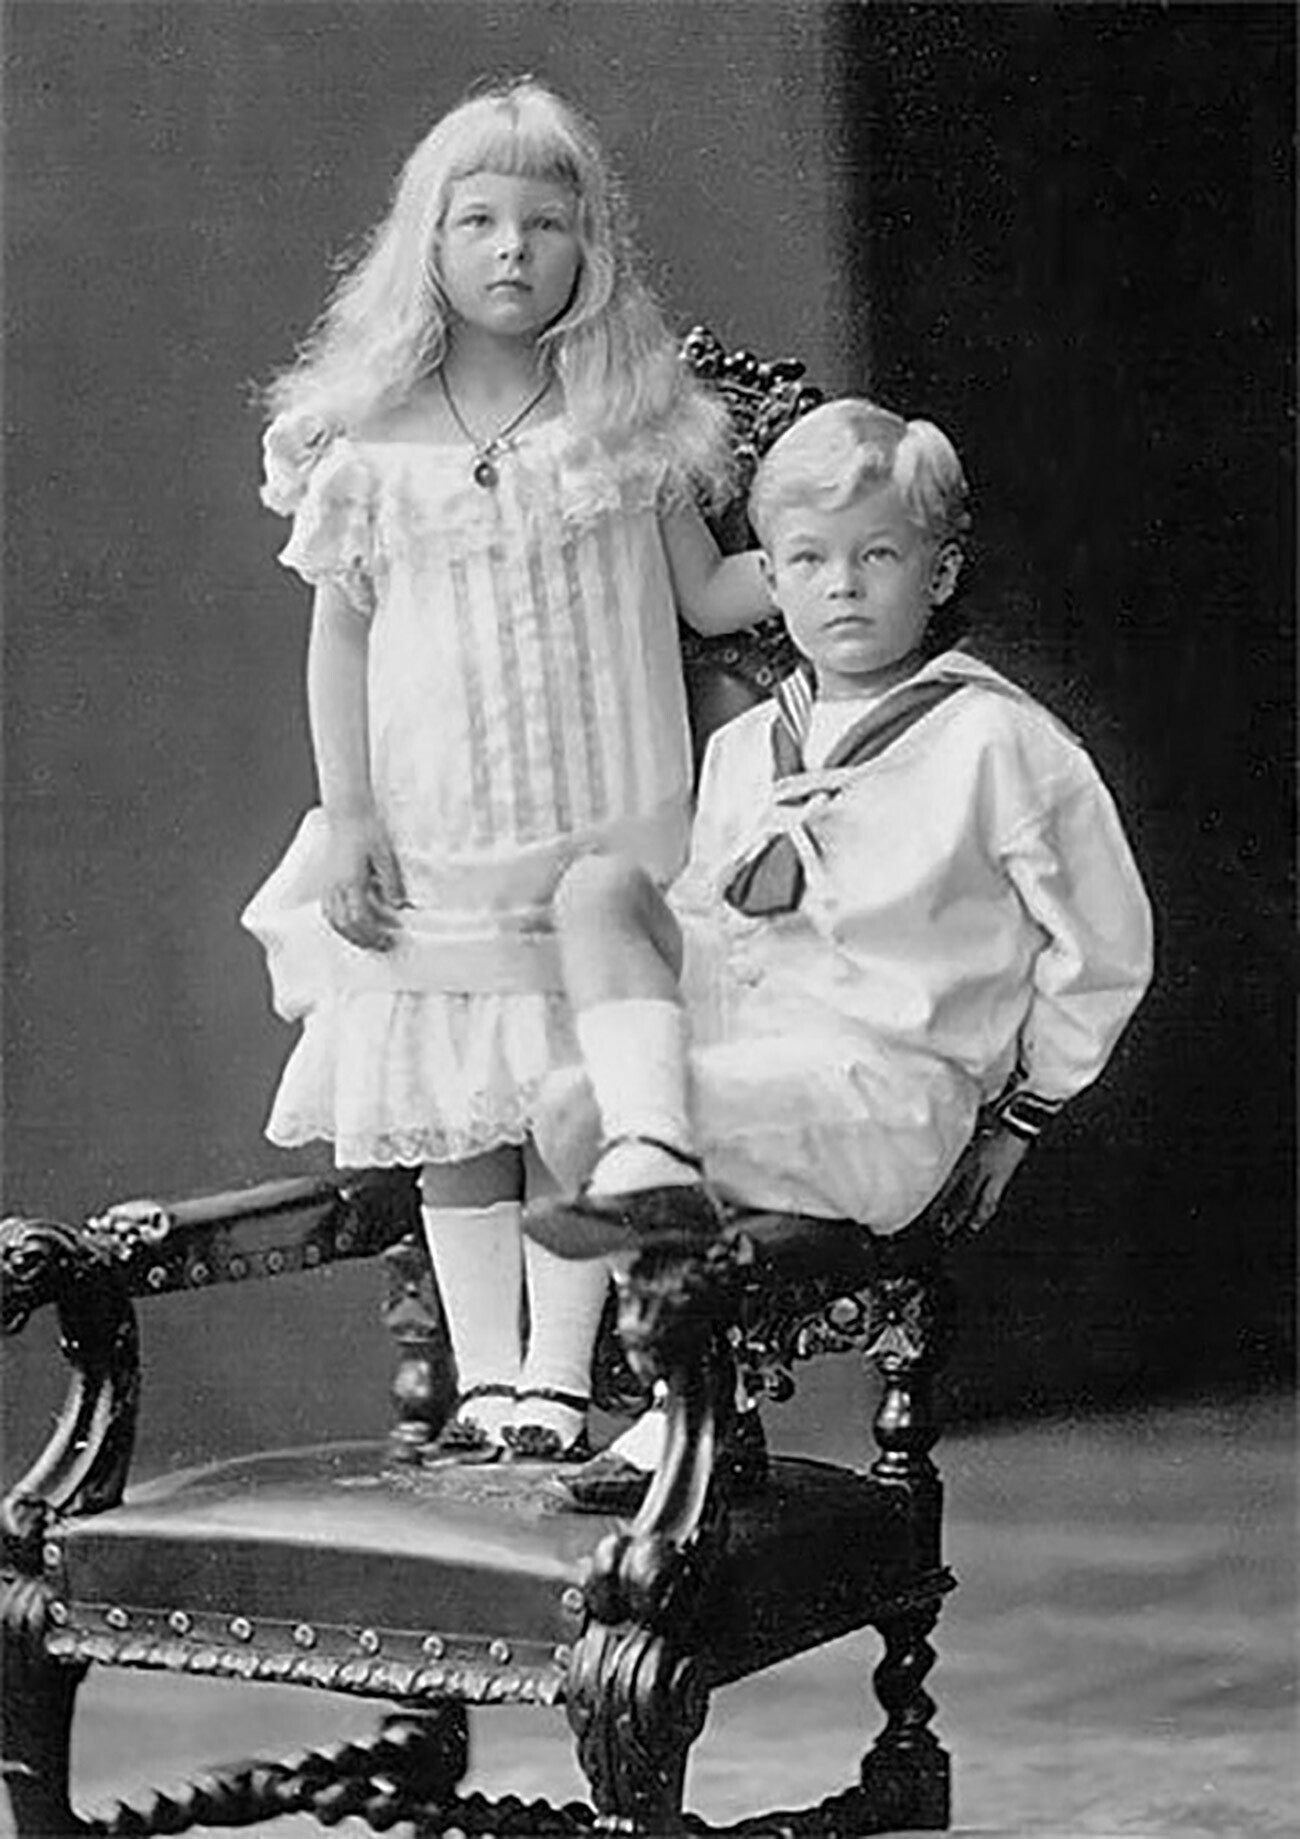 Georg-Michael Alexander von Merenberg com sua irmã, cerca de 1900

